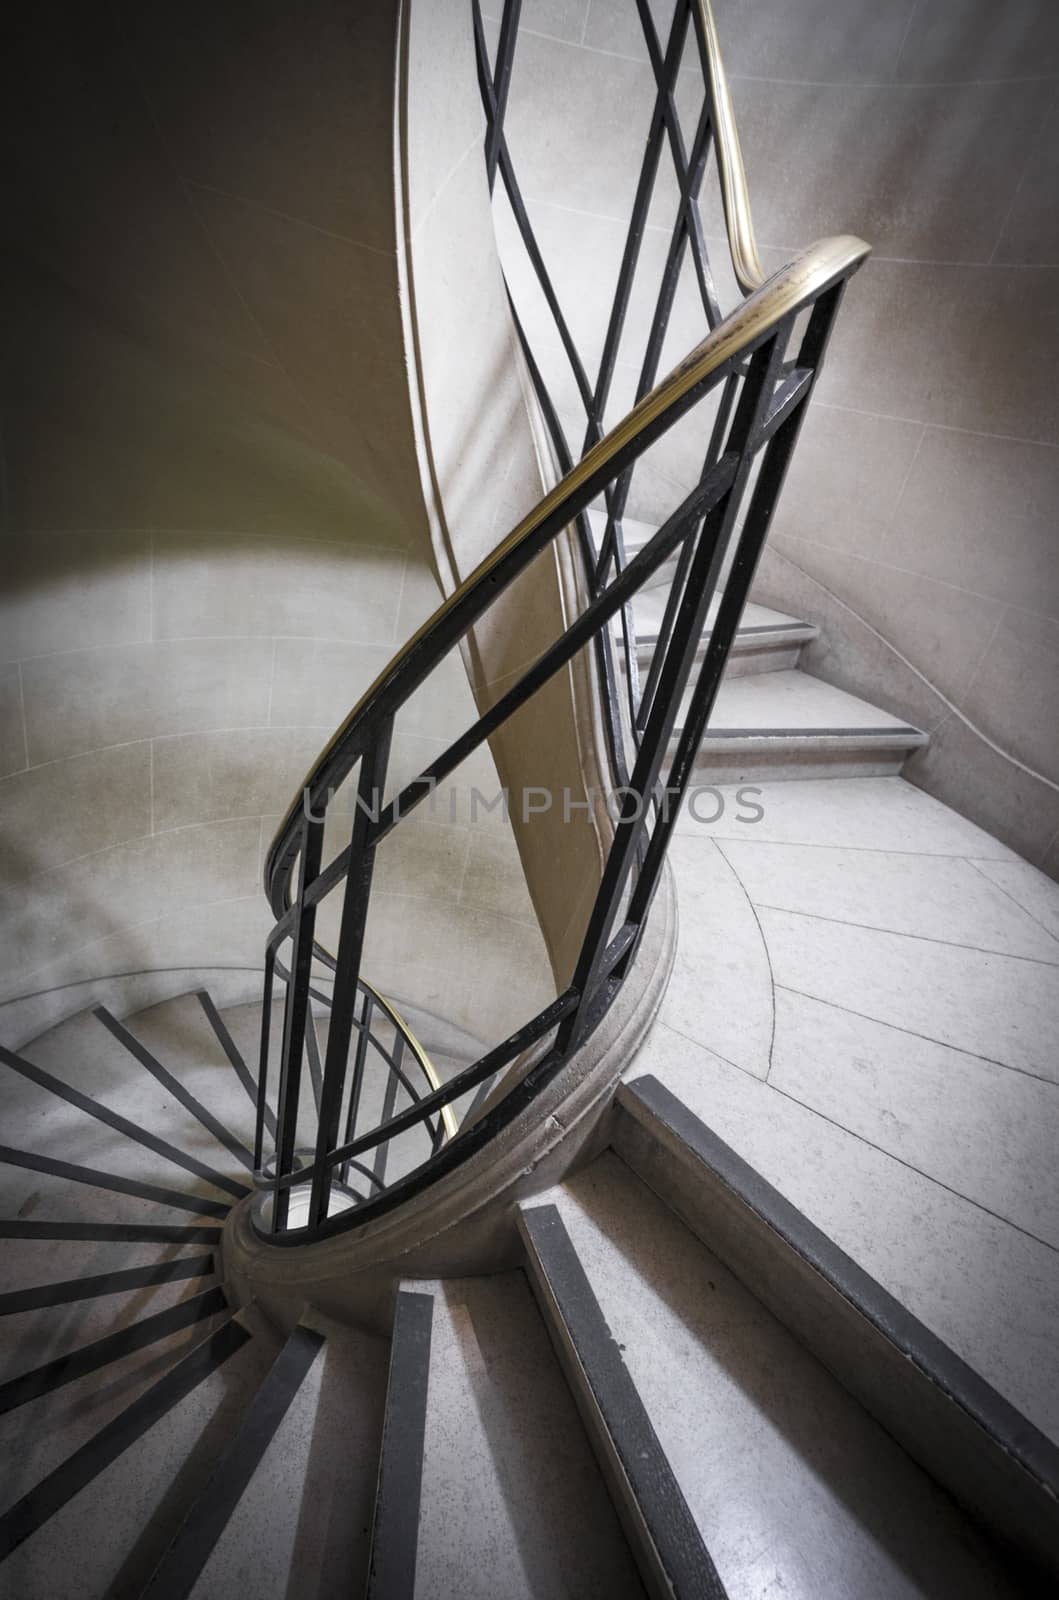 Stairs by Onigiristudio